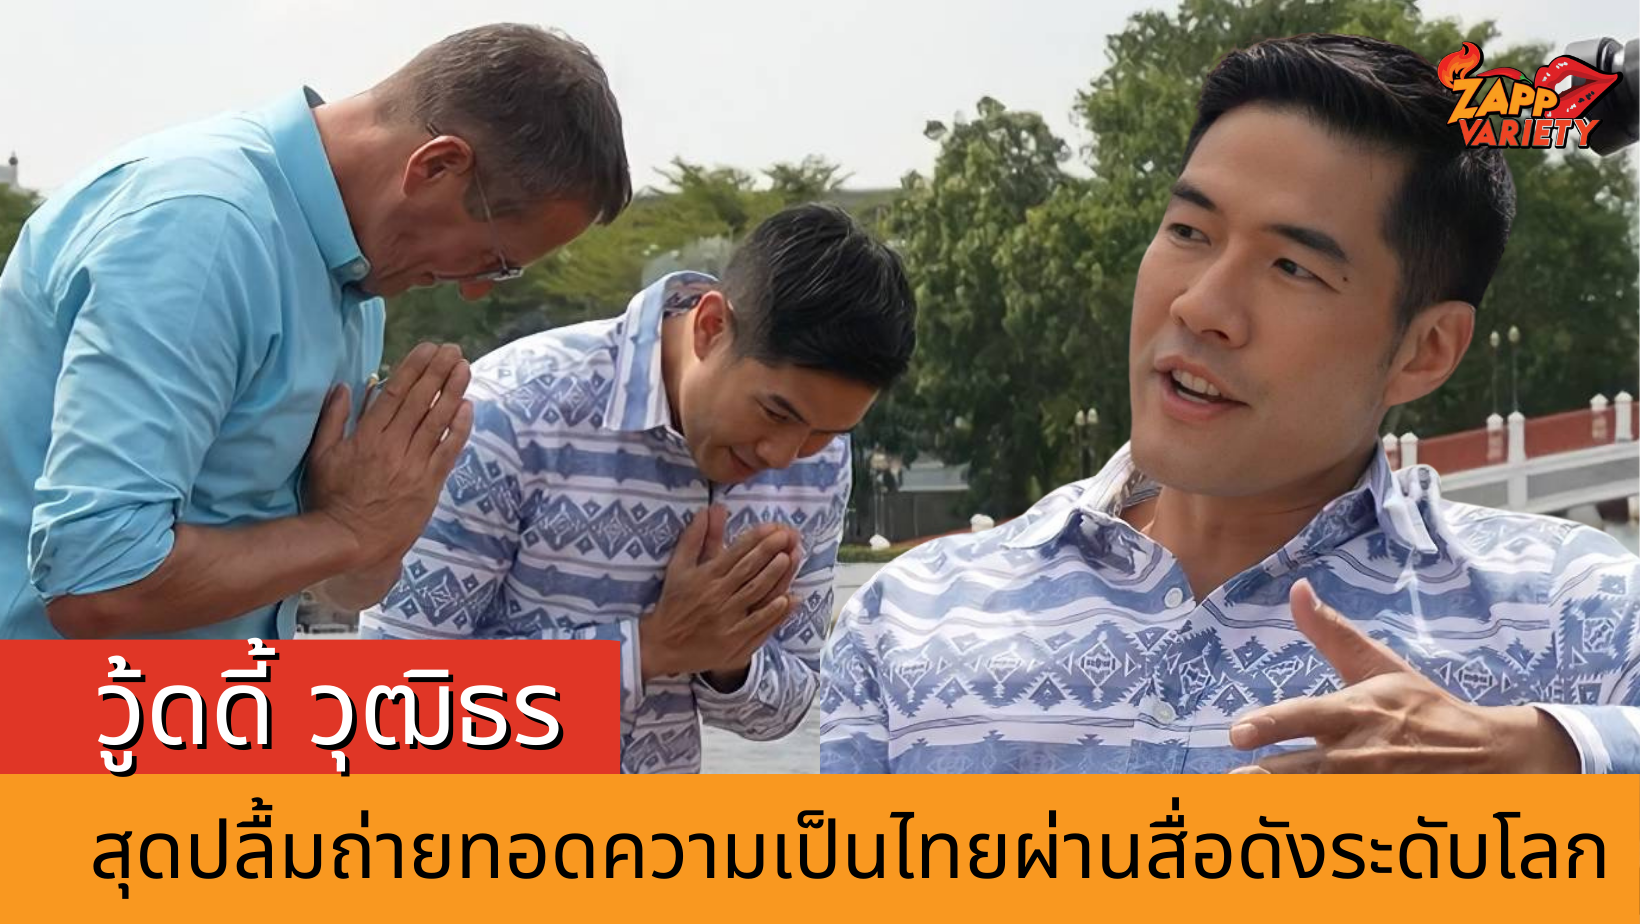 วู้ดดี้ วุฒิธร สุดปลื้มร่วมถ่ายทอดความเป็นไทยในรายการ CNN สื่อดังระดับโลก